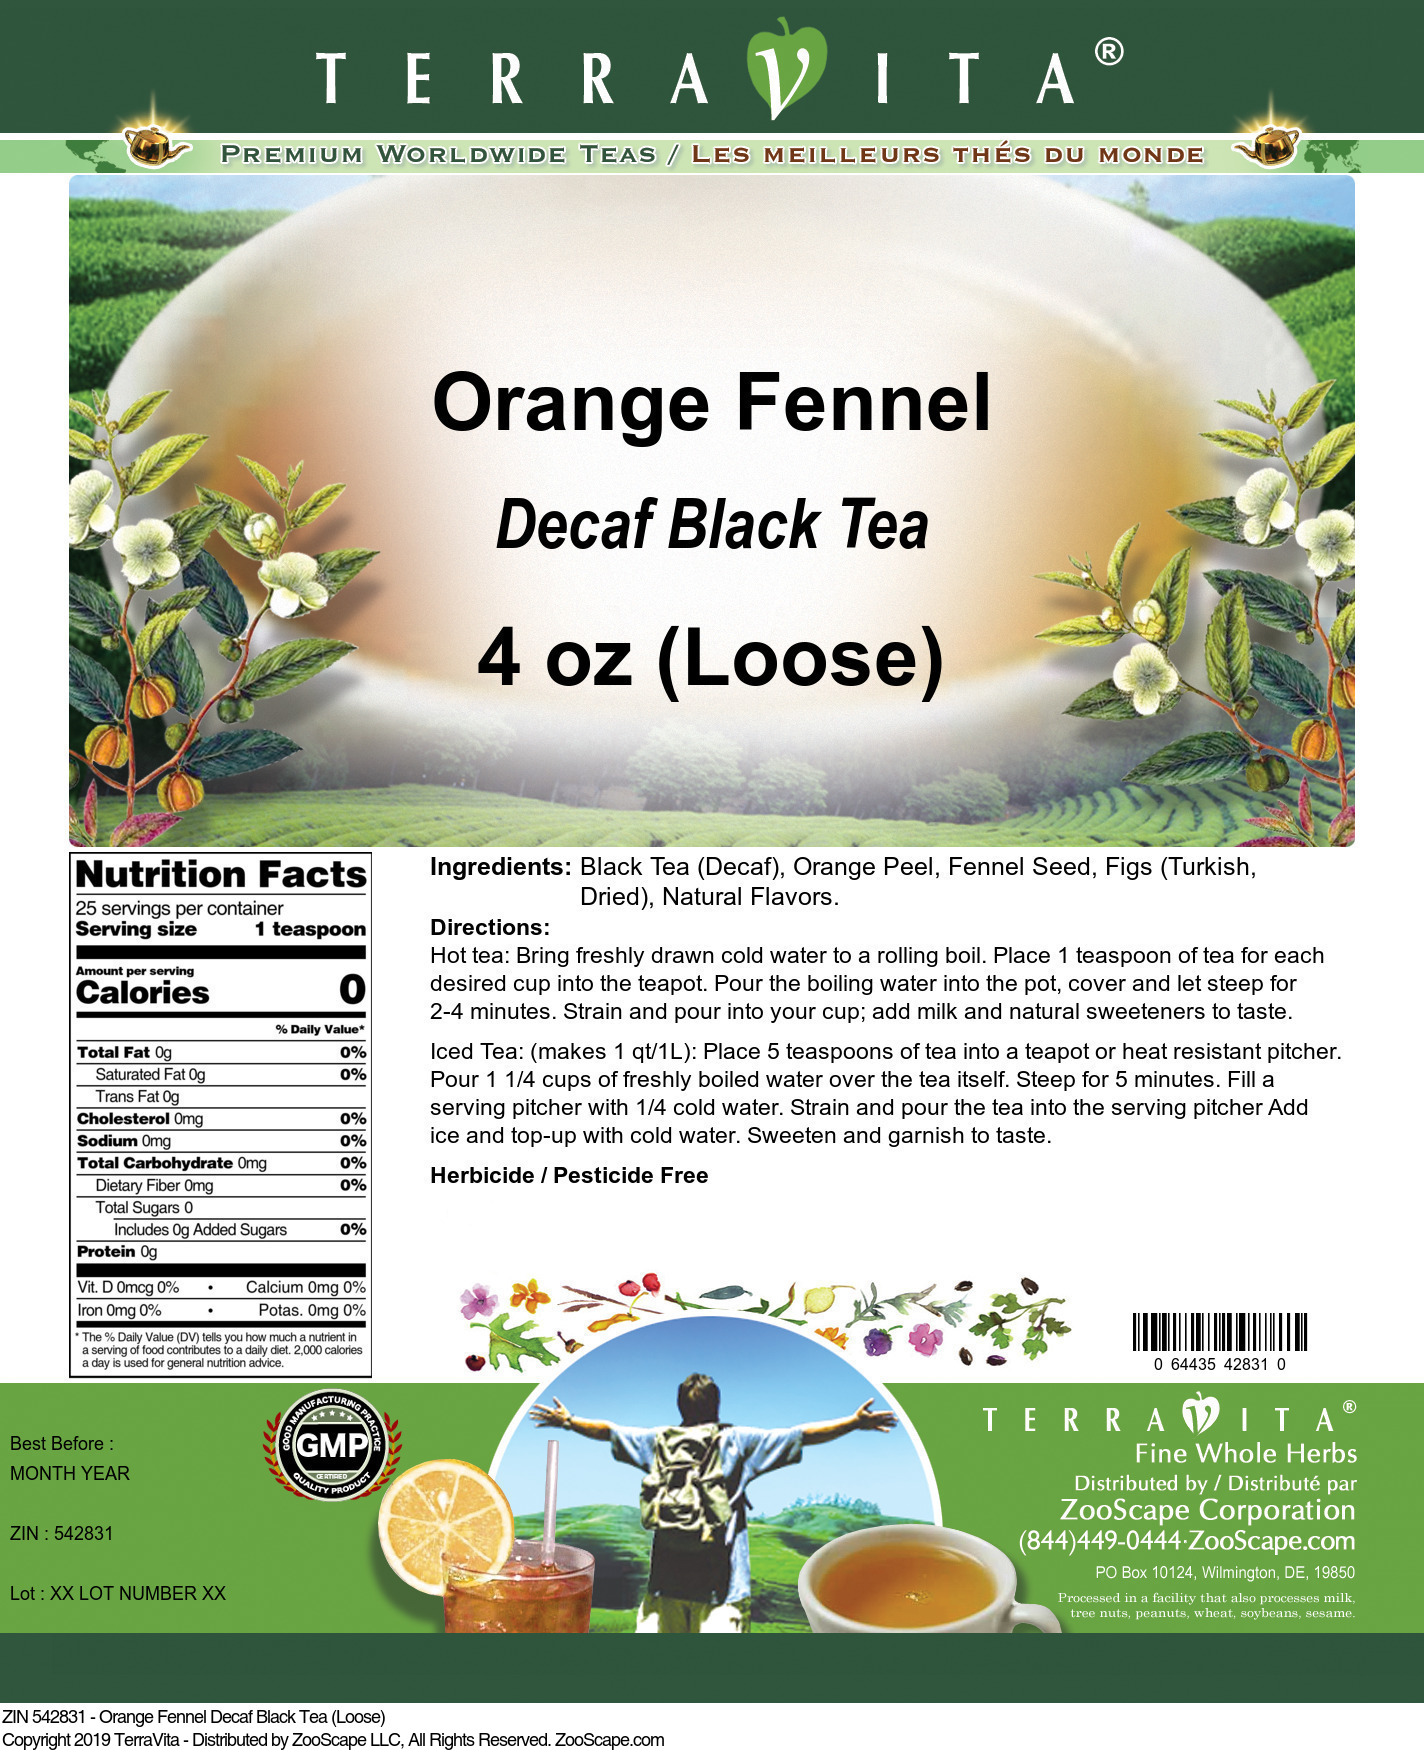 Orange Fennel Decaf Black Tea (Loose) - Label